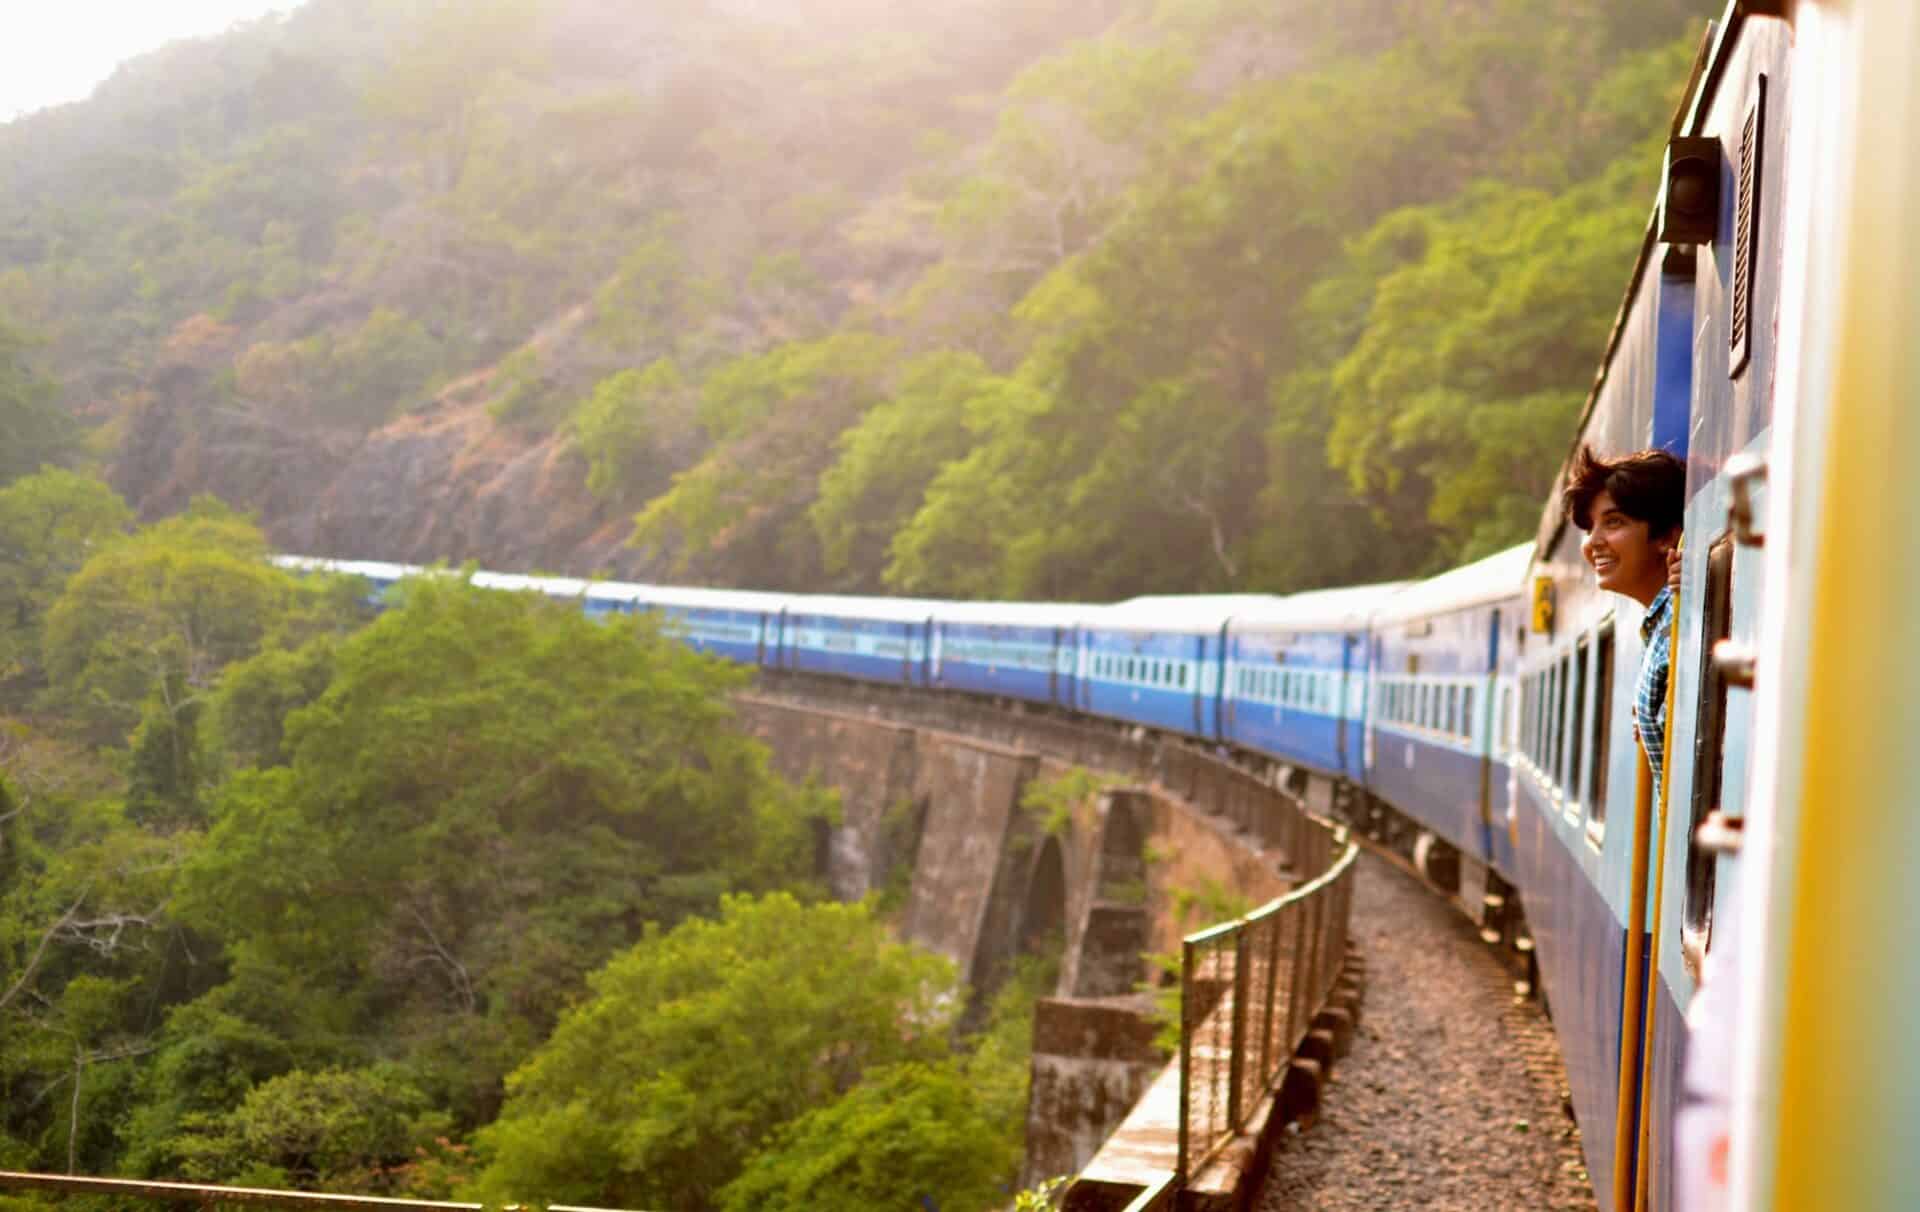 Sri Lanka's Blue Train